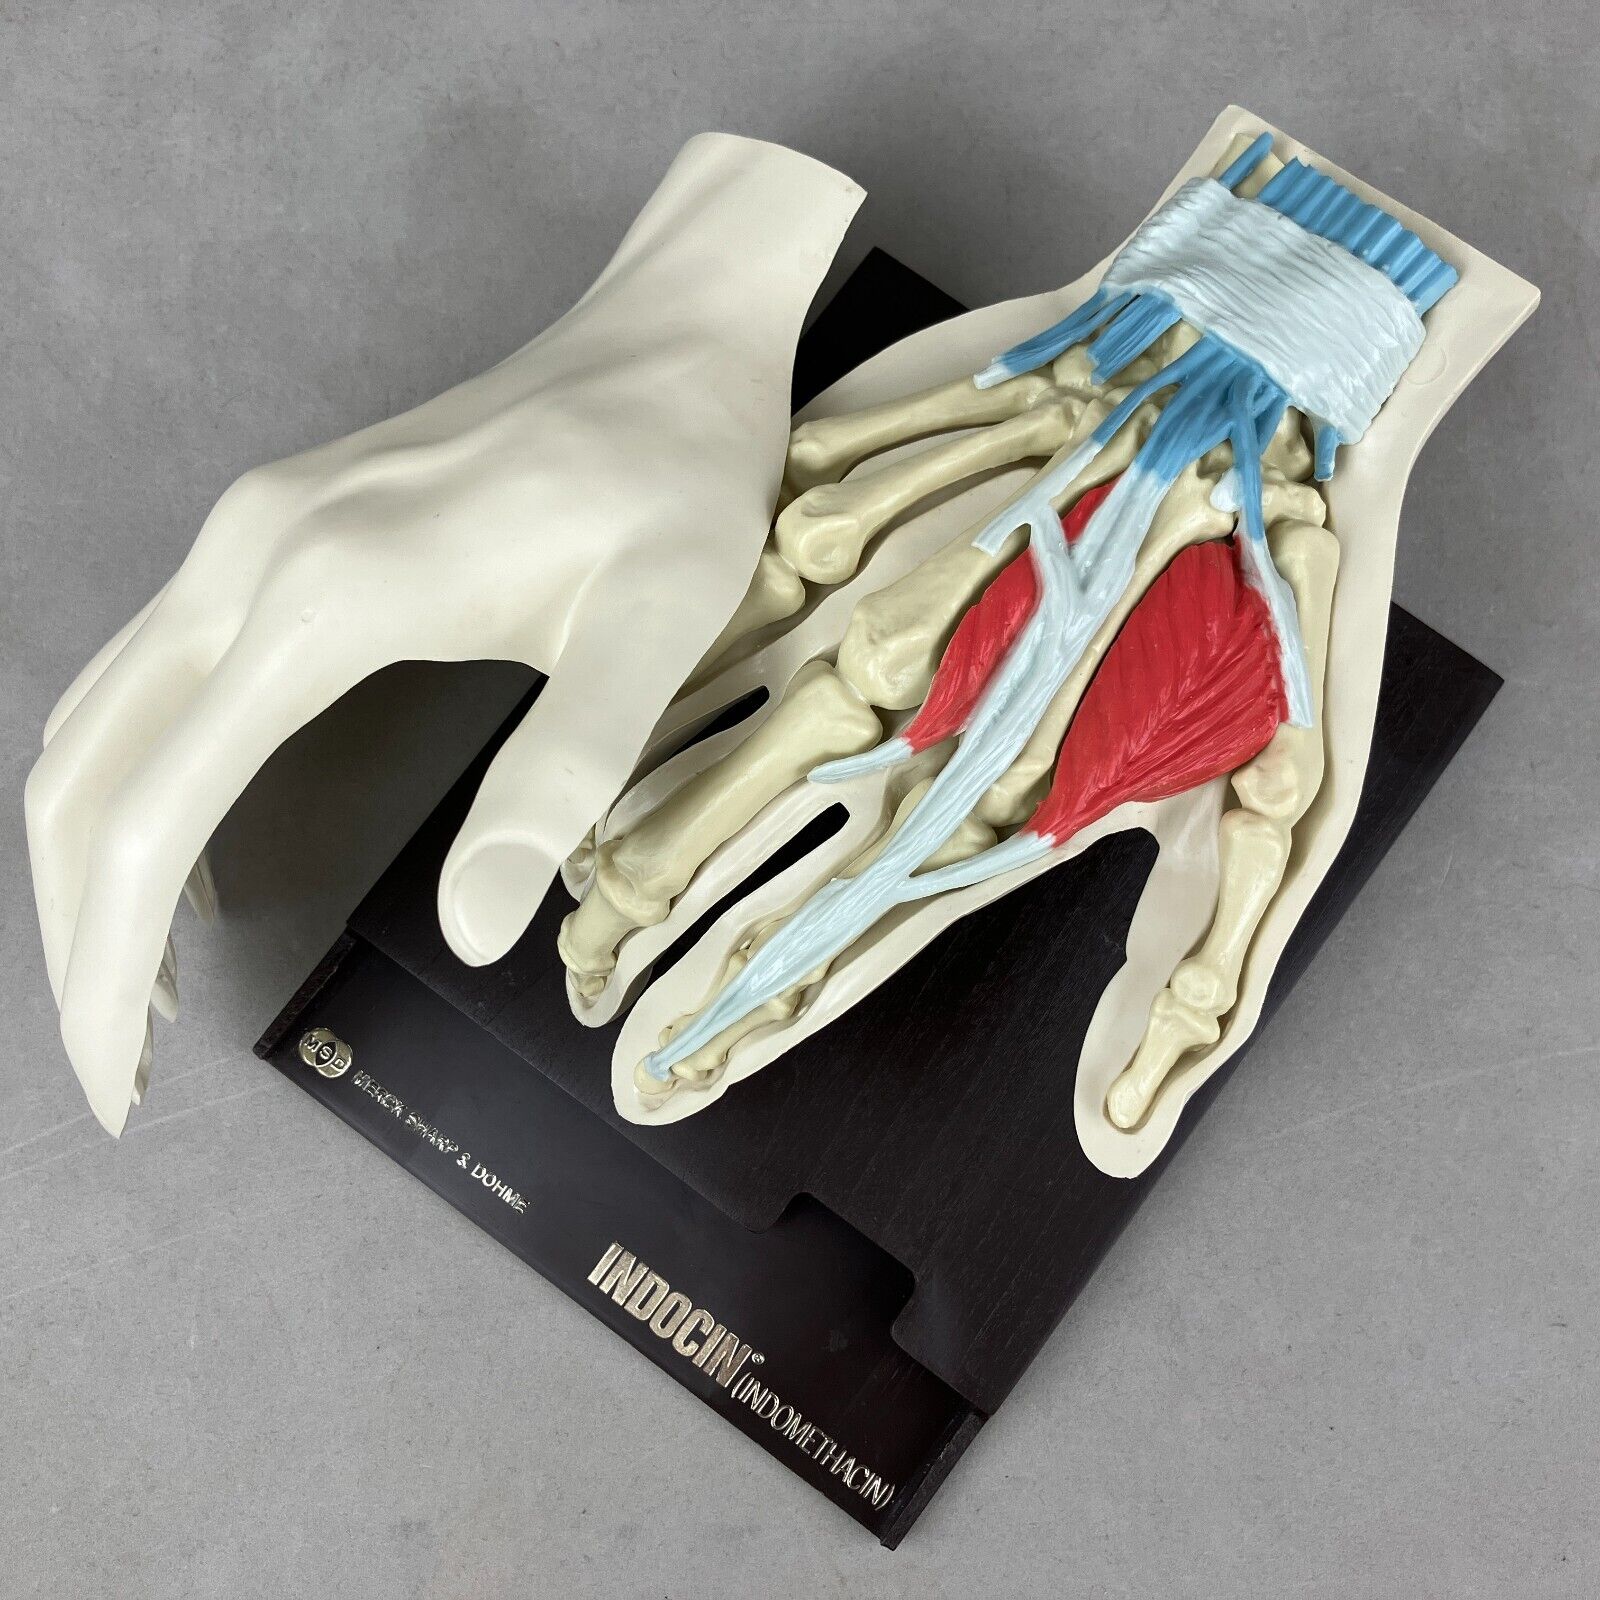 Vintage Merck Sharp & Dohme Indocin Advertising Anatomical Human Hand Model